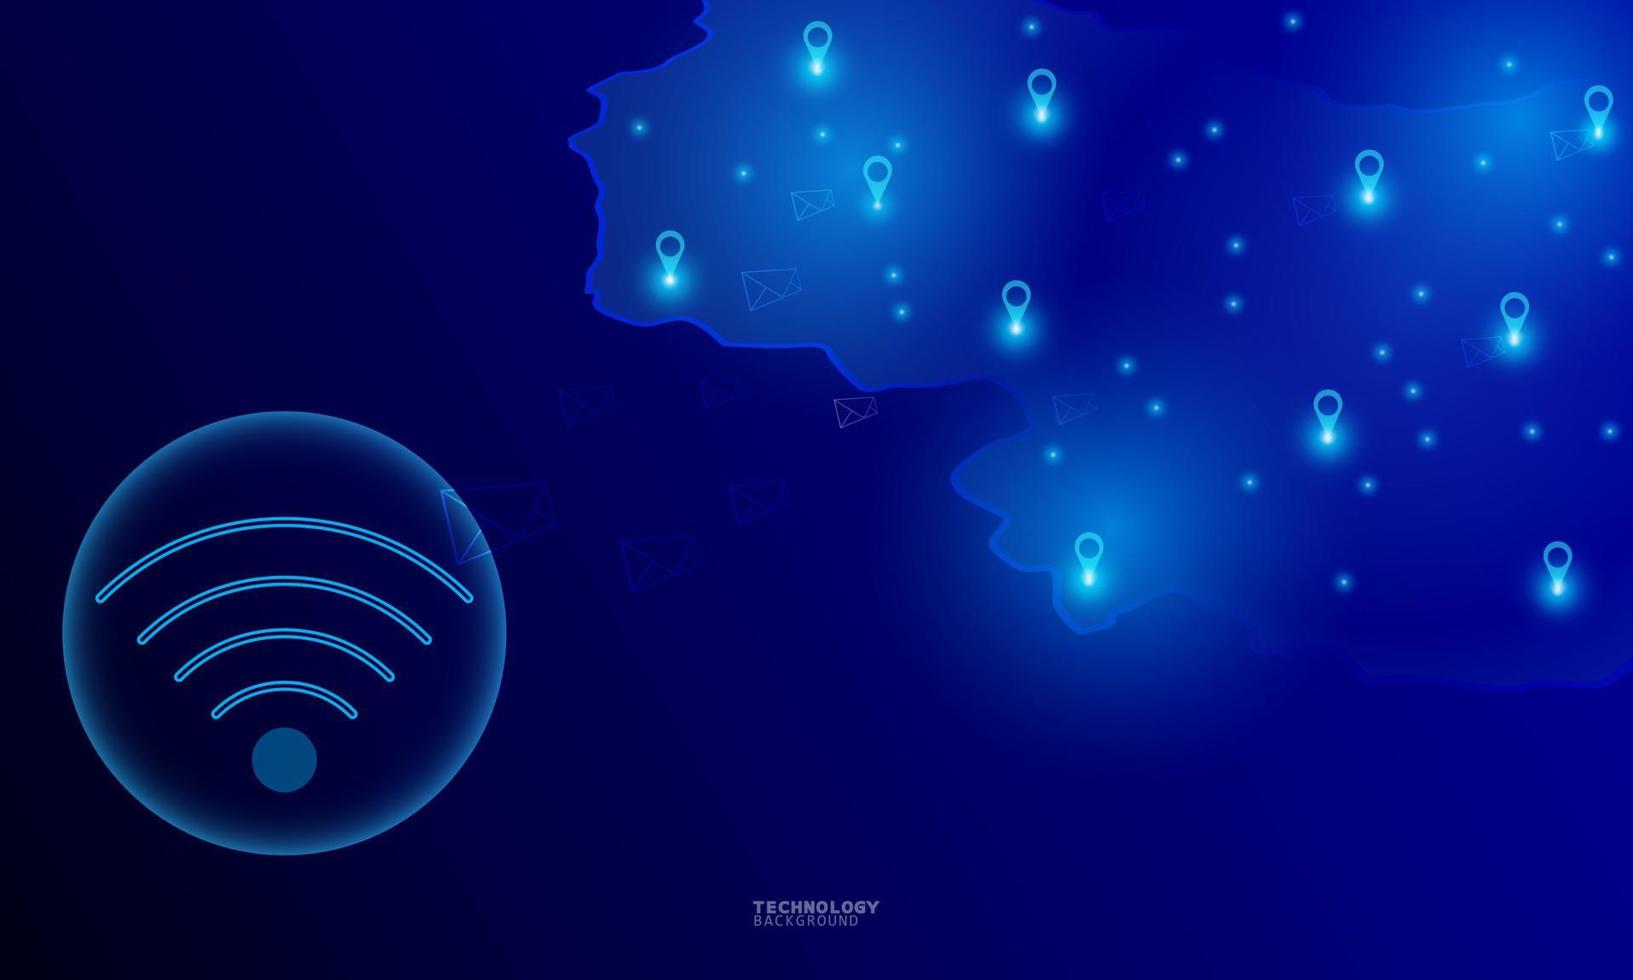 trådlös nätverkskommunikation, internetuppkoppling. futuristisk stadsbild i blå ton med elektroniska enheter, multimedia, teknikikoner och nätverksanslutning. vektor